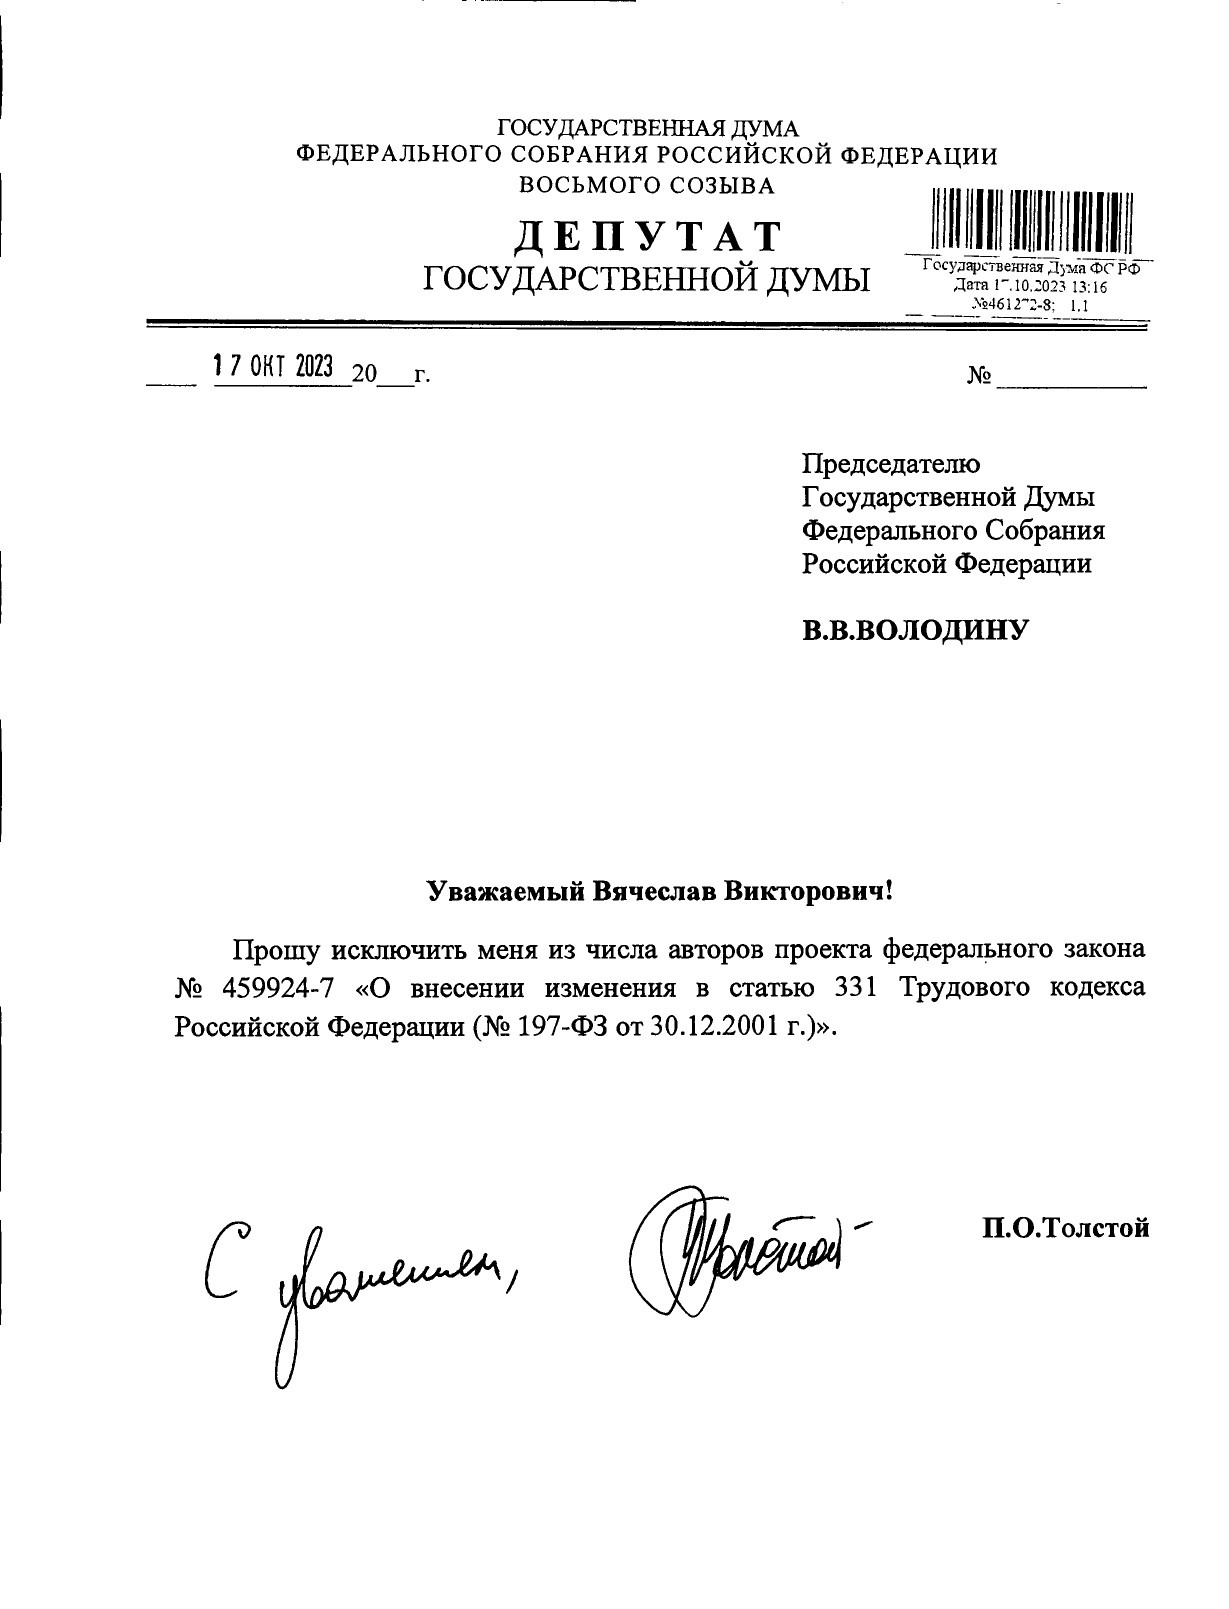 Просьба Петра Толстого опубликована на странице законопроекта